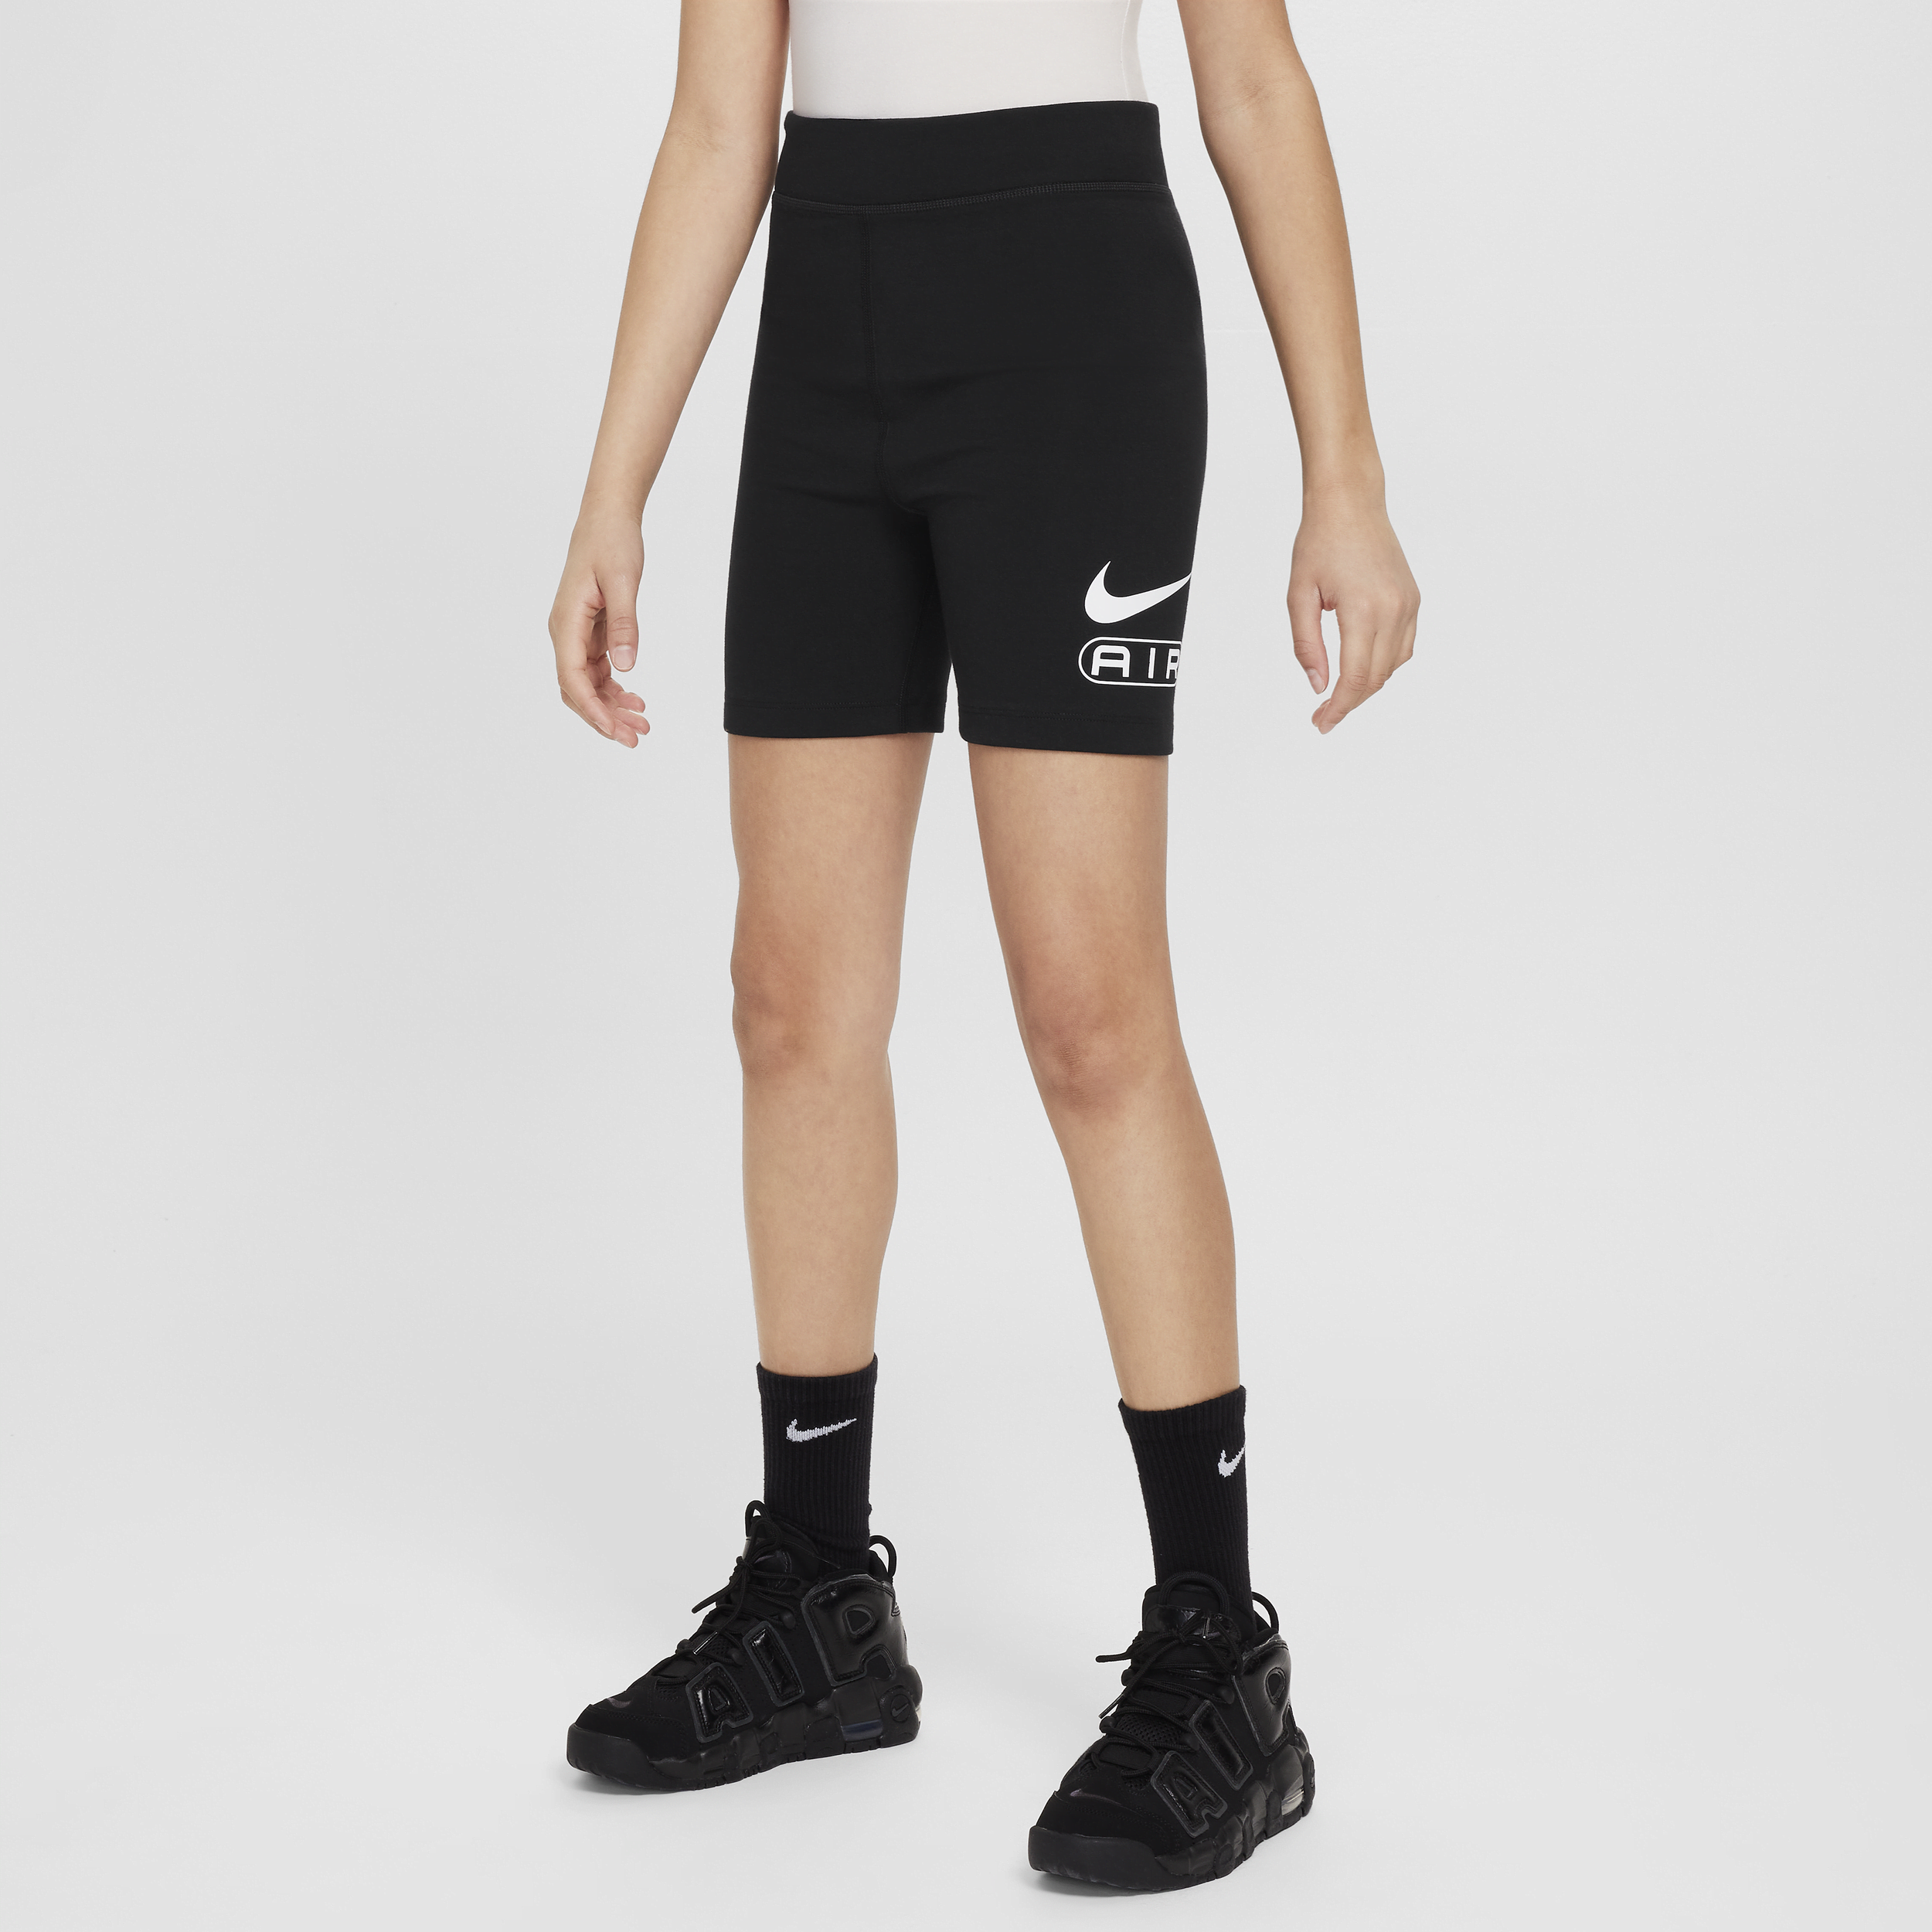 Shorts da ciclista Nike Air – Bambina/Ragazza - Nero